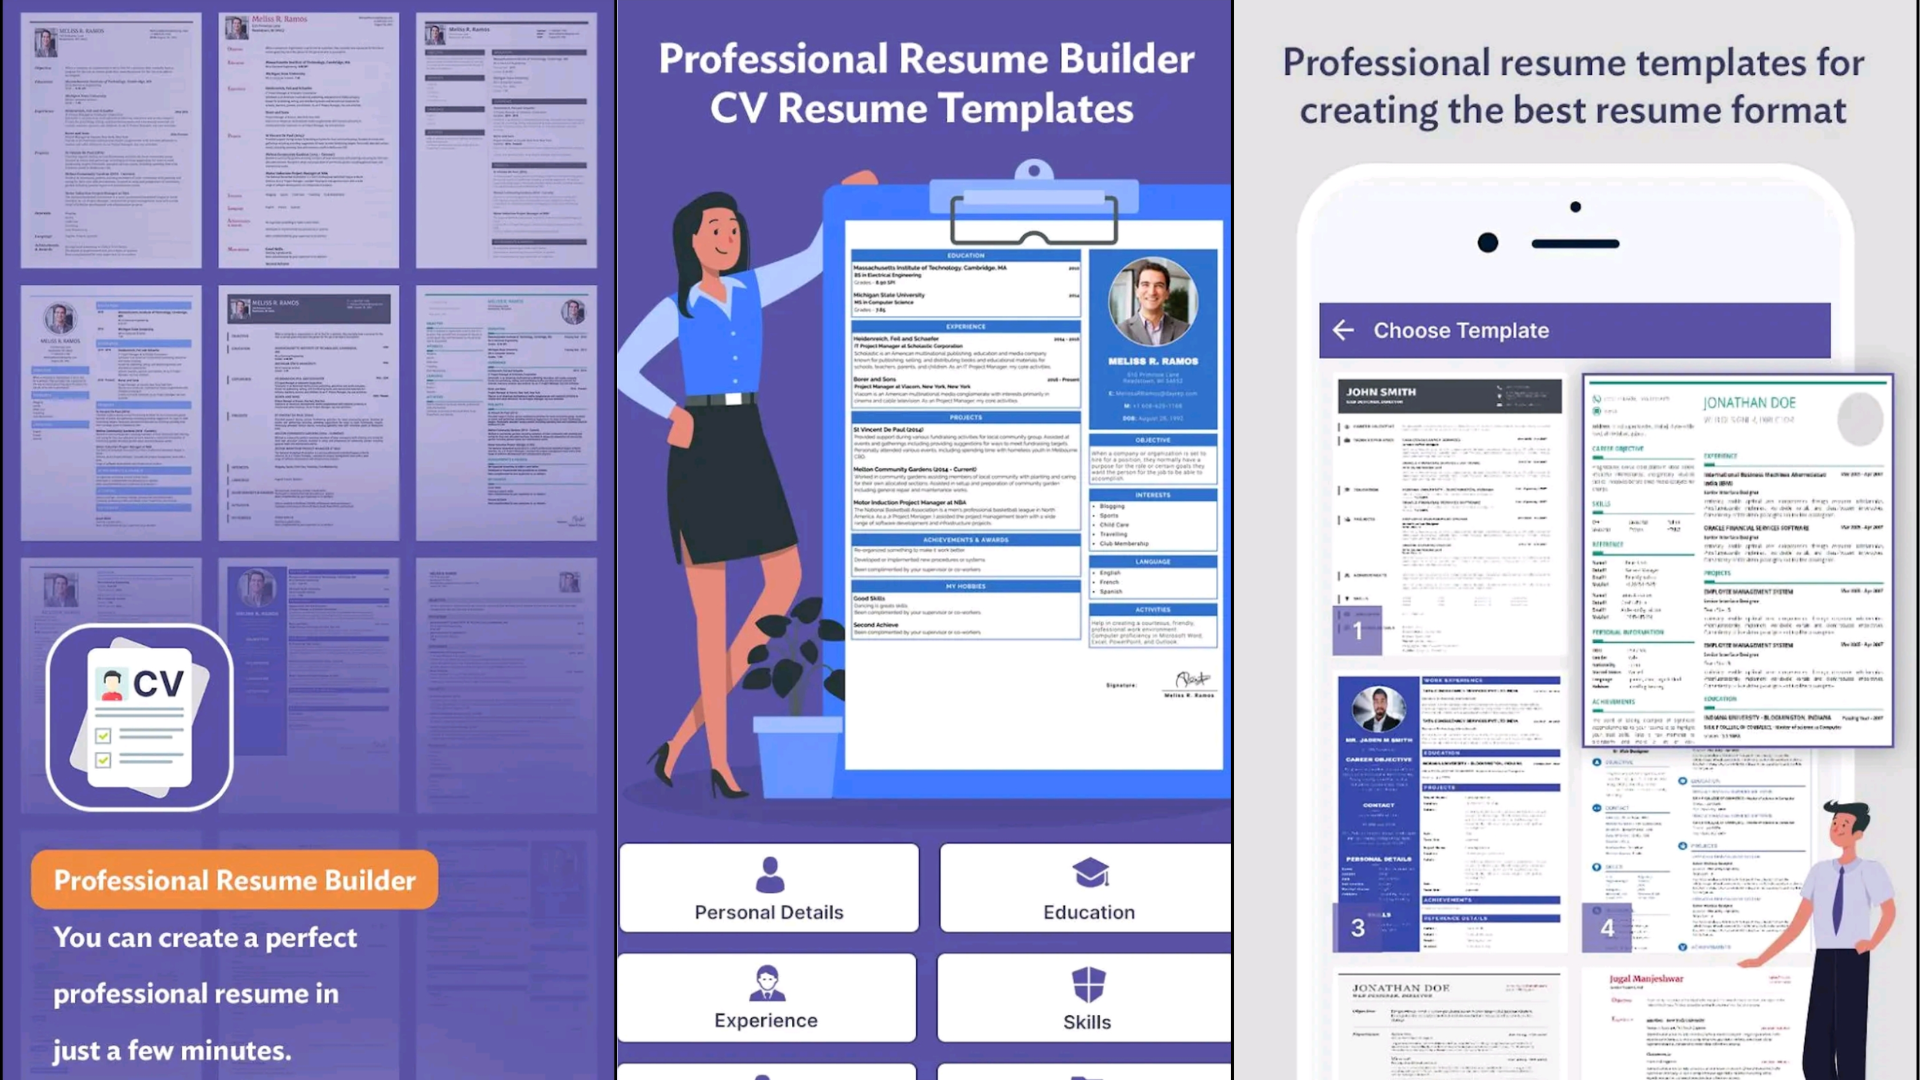 6. Profesinal Resume Builder